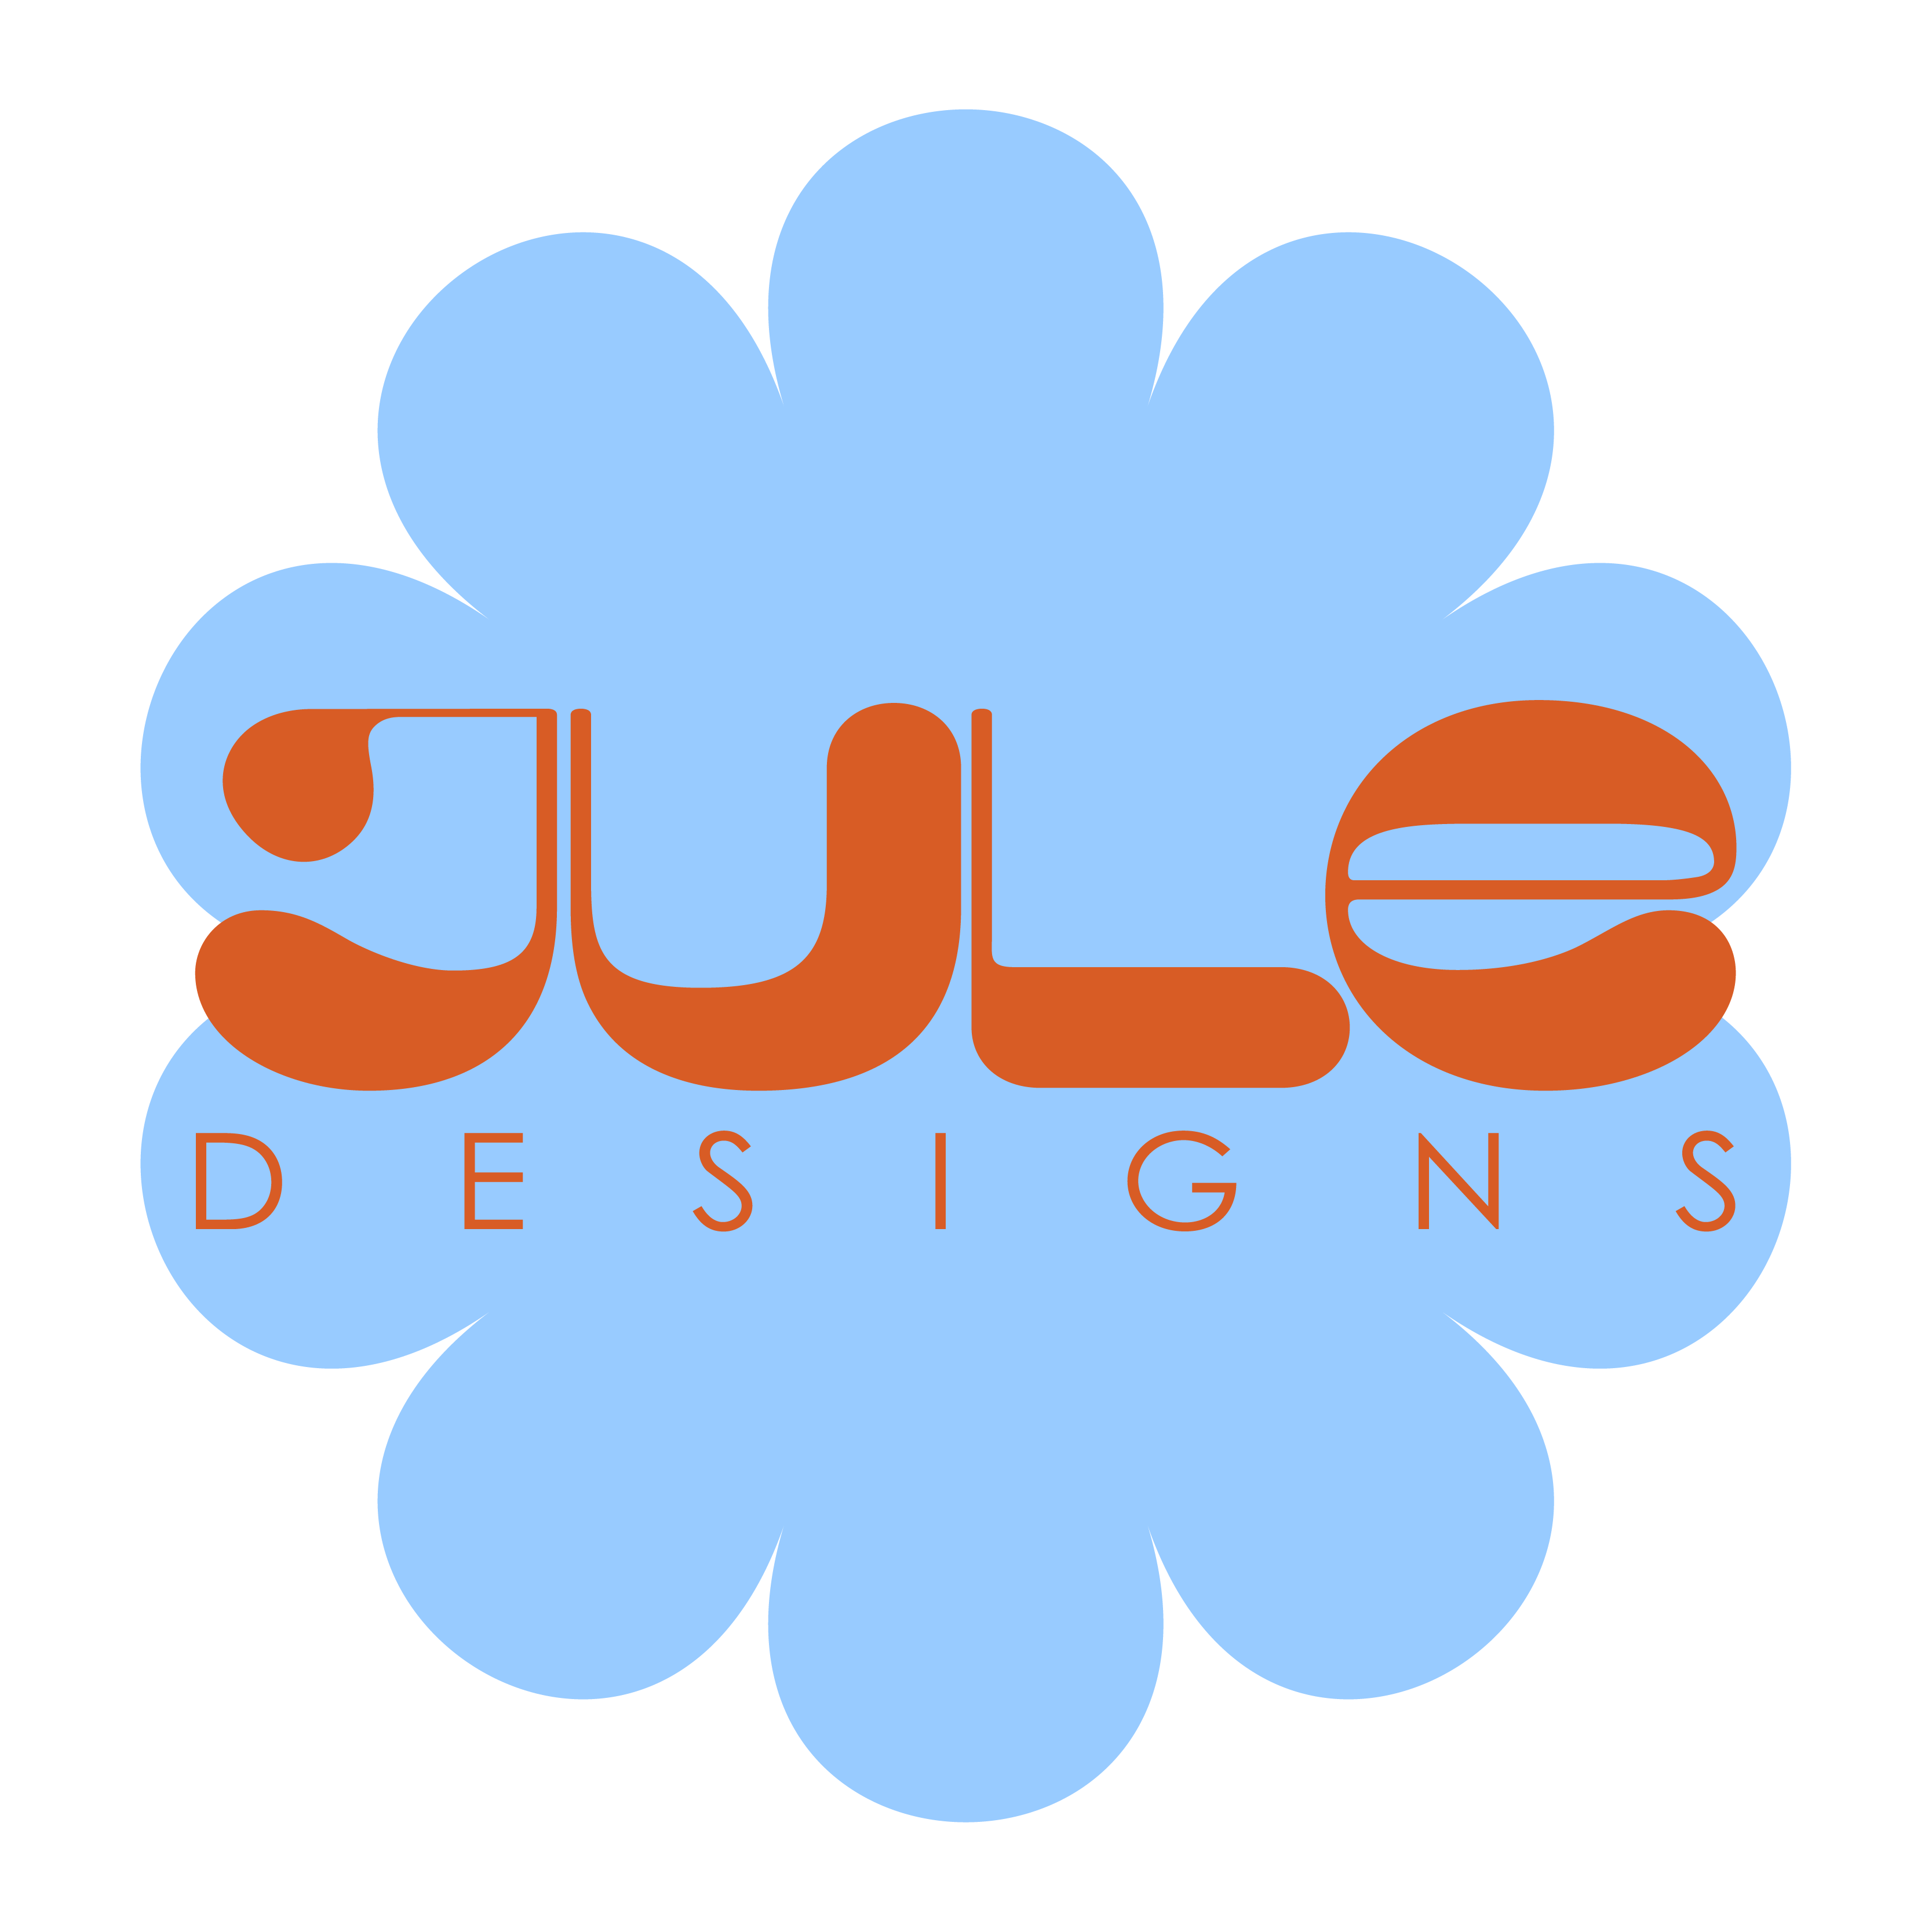 Jule Designs